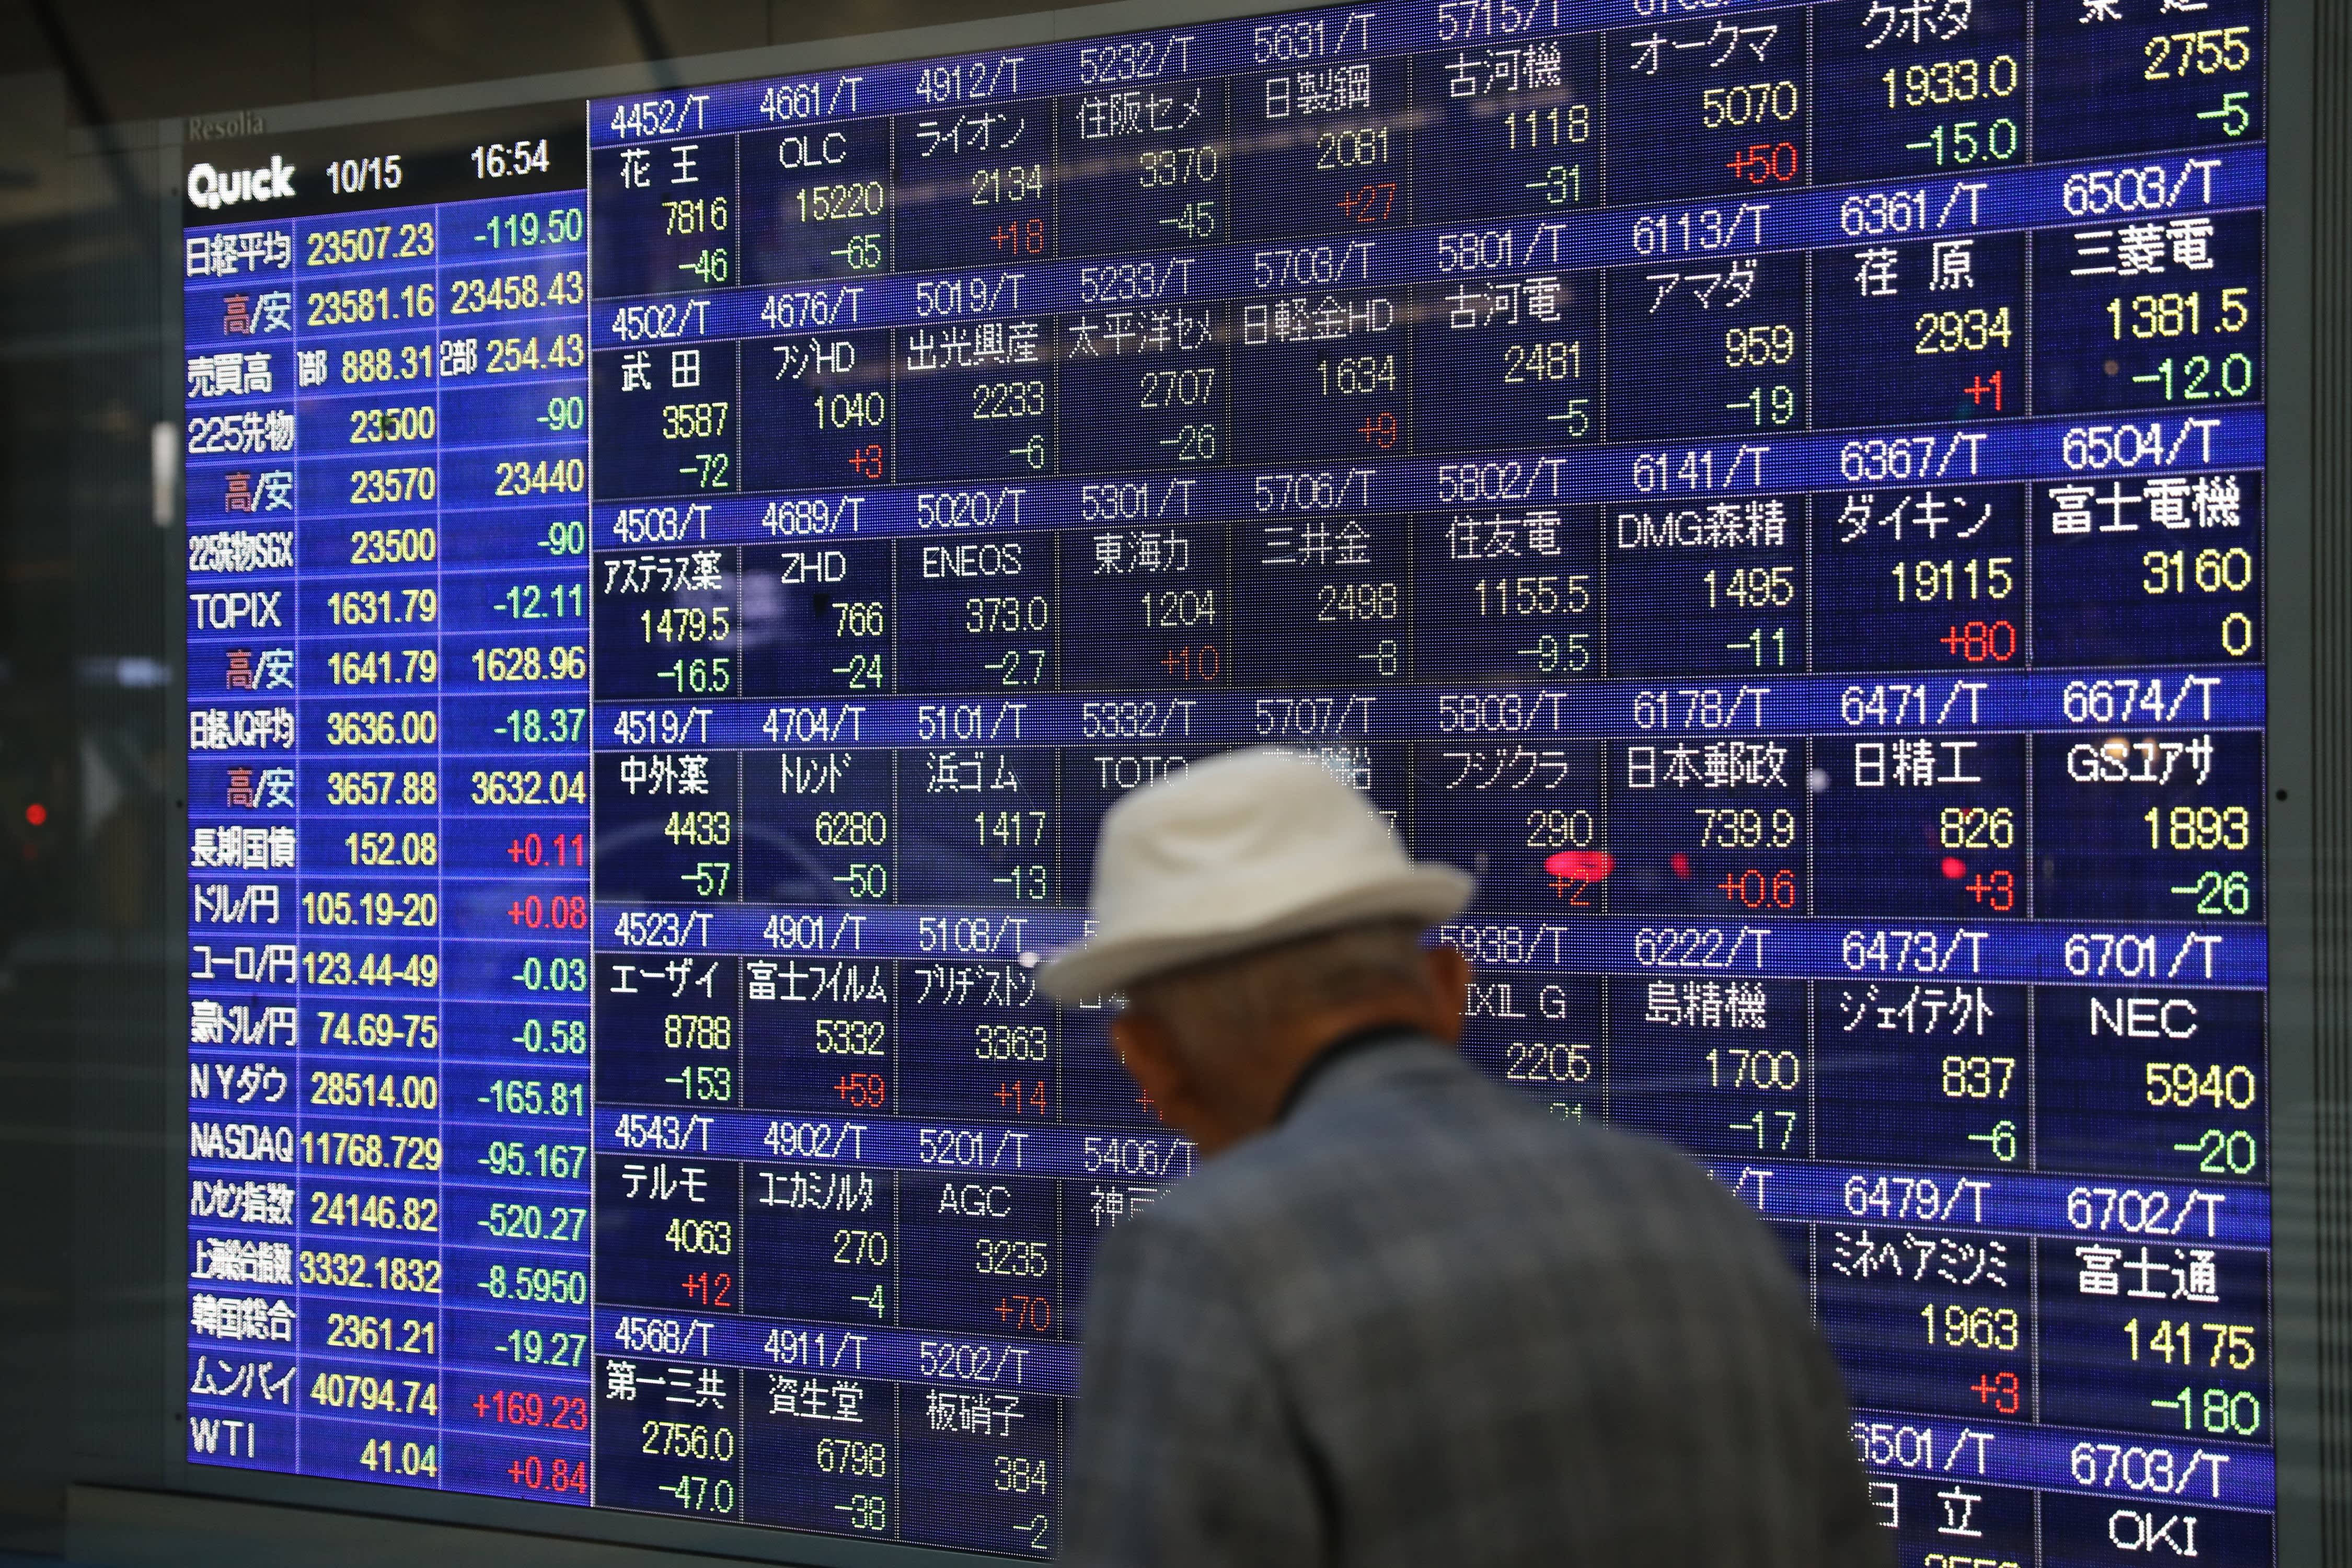 Las acciones caen en Corea del Sur y la confianza empresarial mejora en Japón